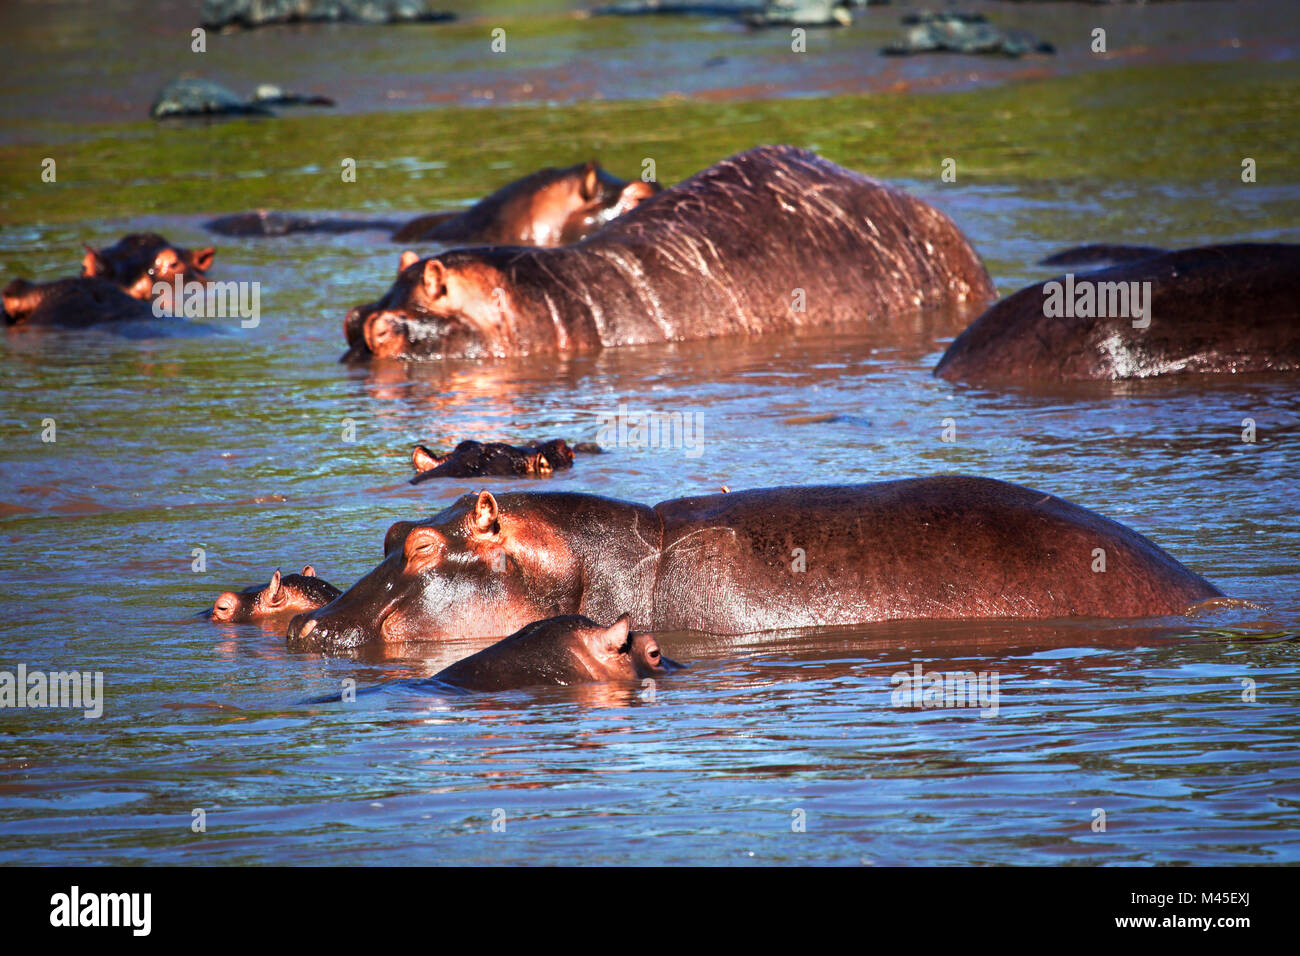 Hippo, hippopotamus in river. Serengeti, Tanzania, Africa Stock Photo